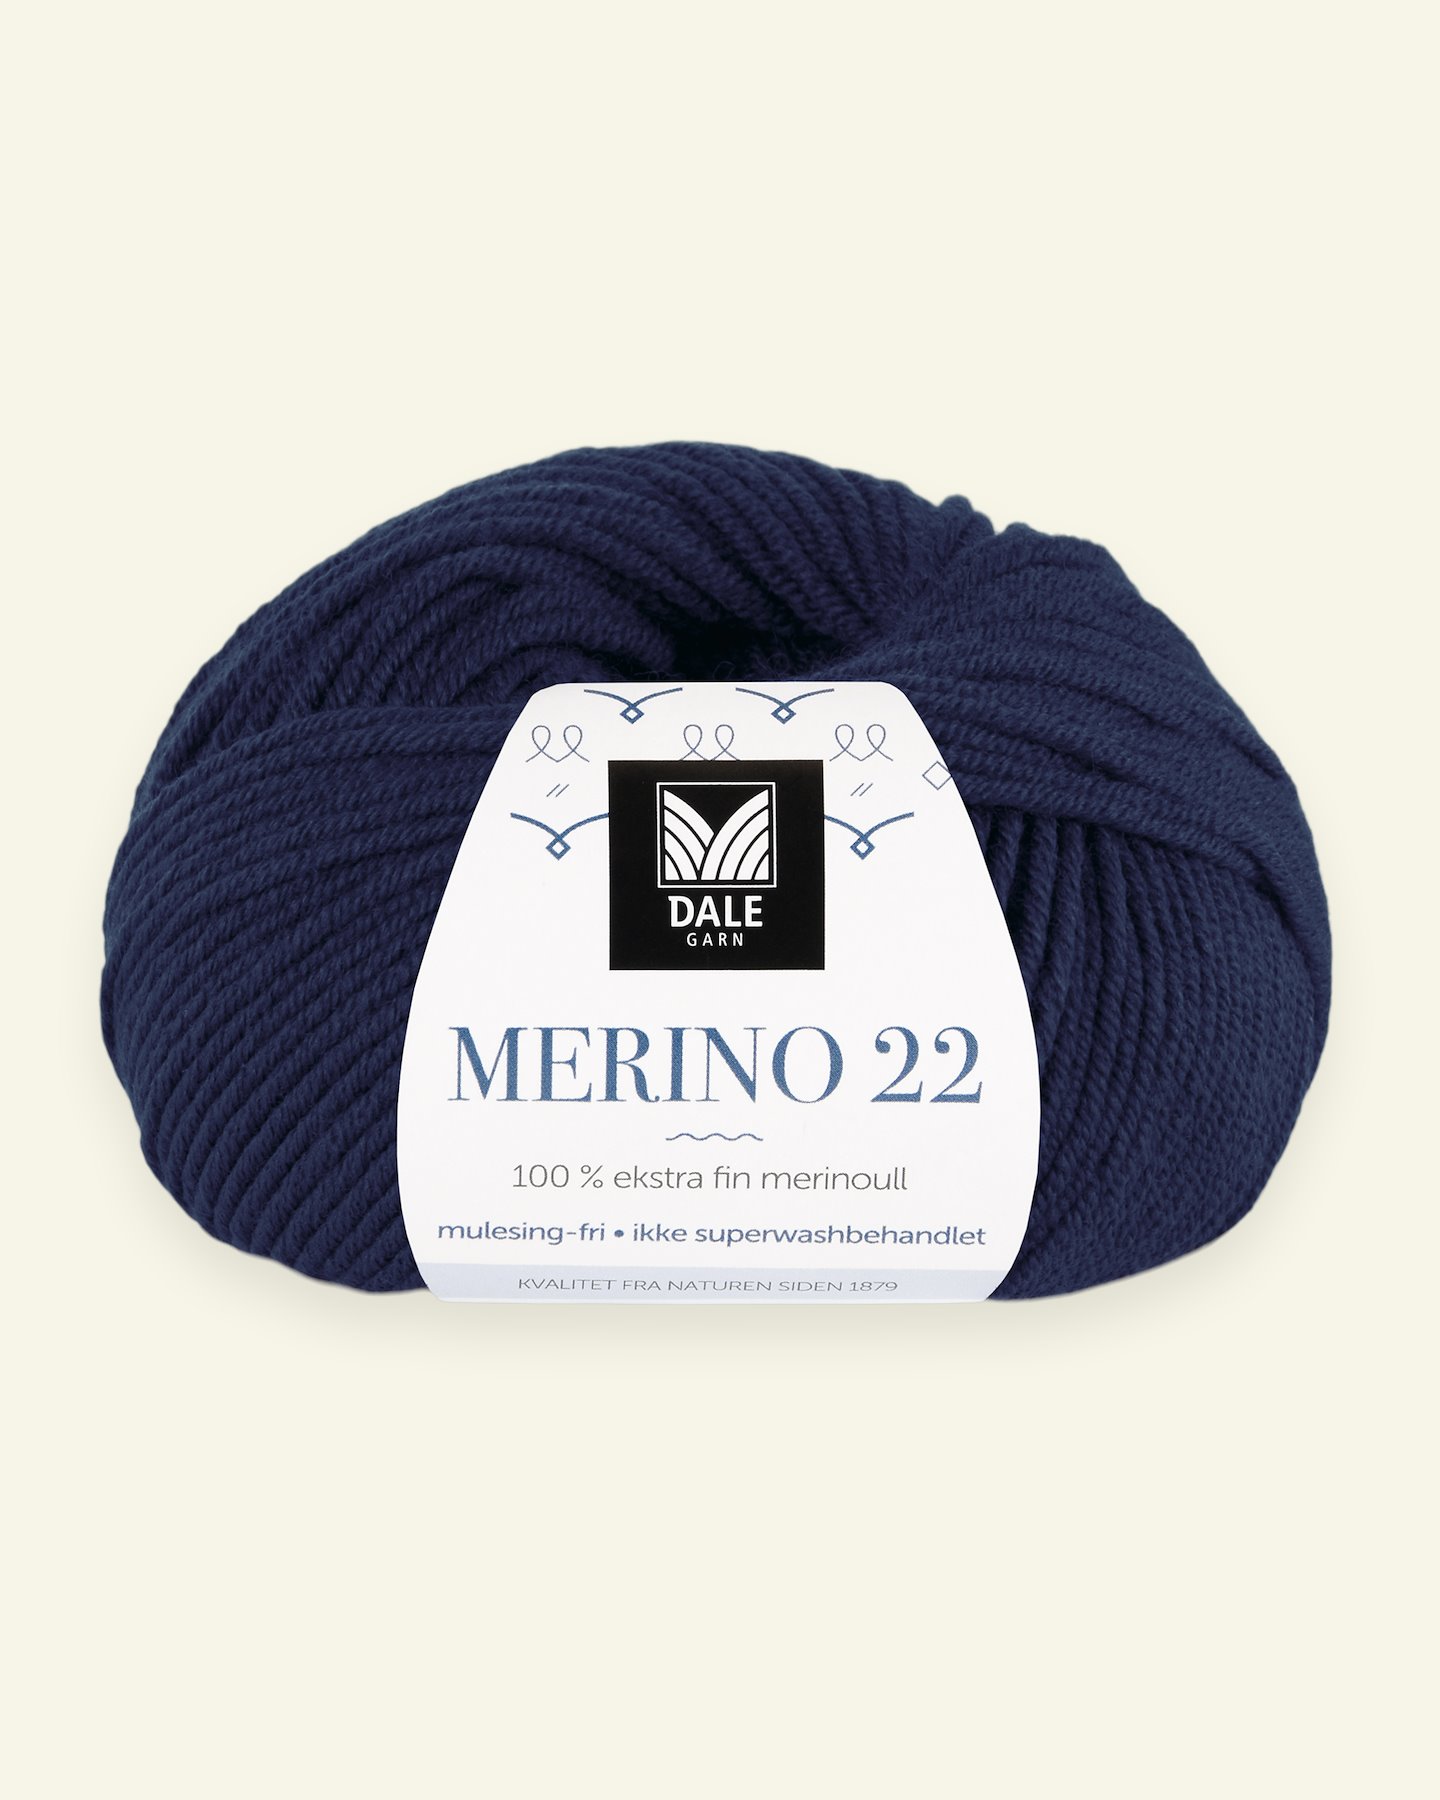 Dale Garn, 100% extra fine merino wool yarn, "Merino 22", navy 90000387_pack